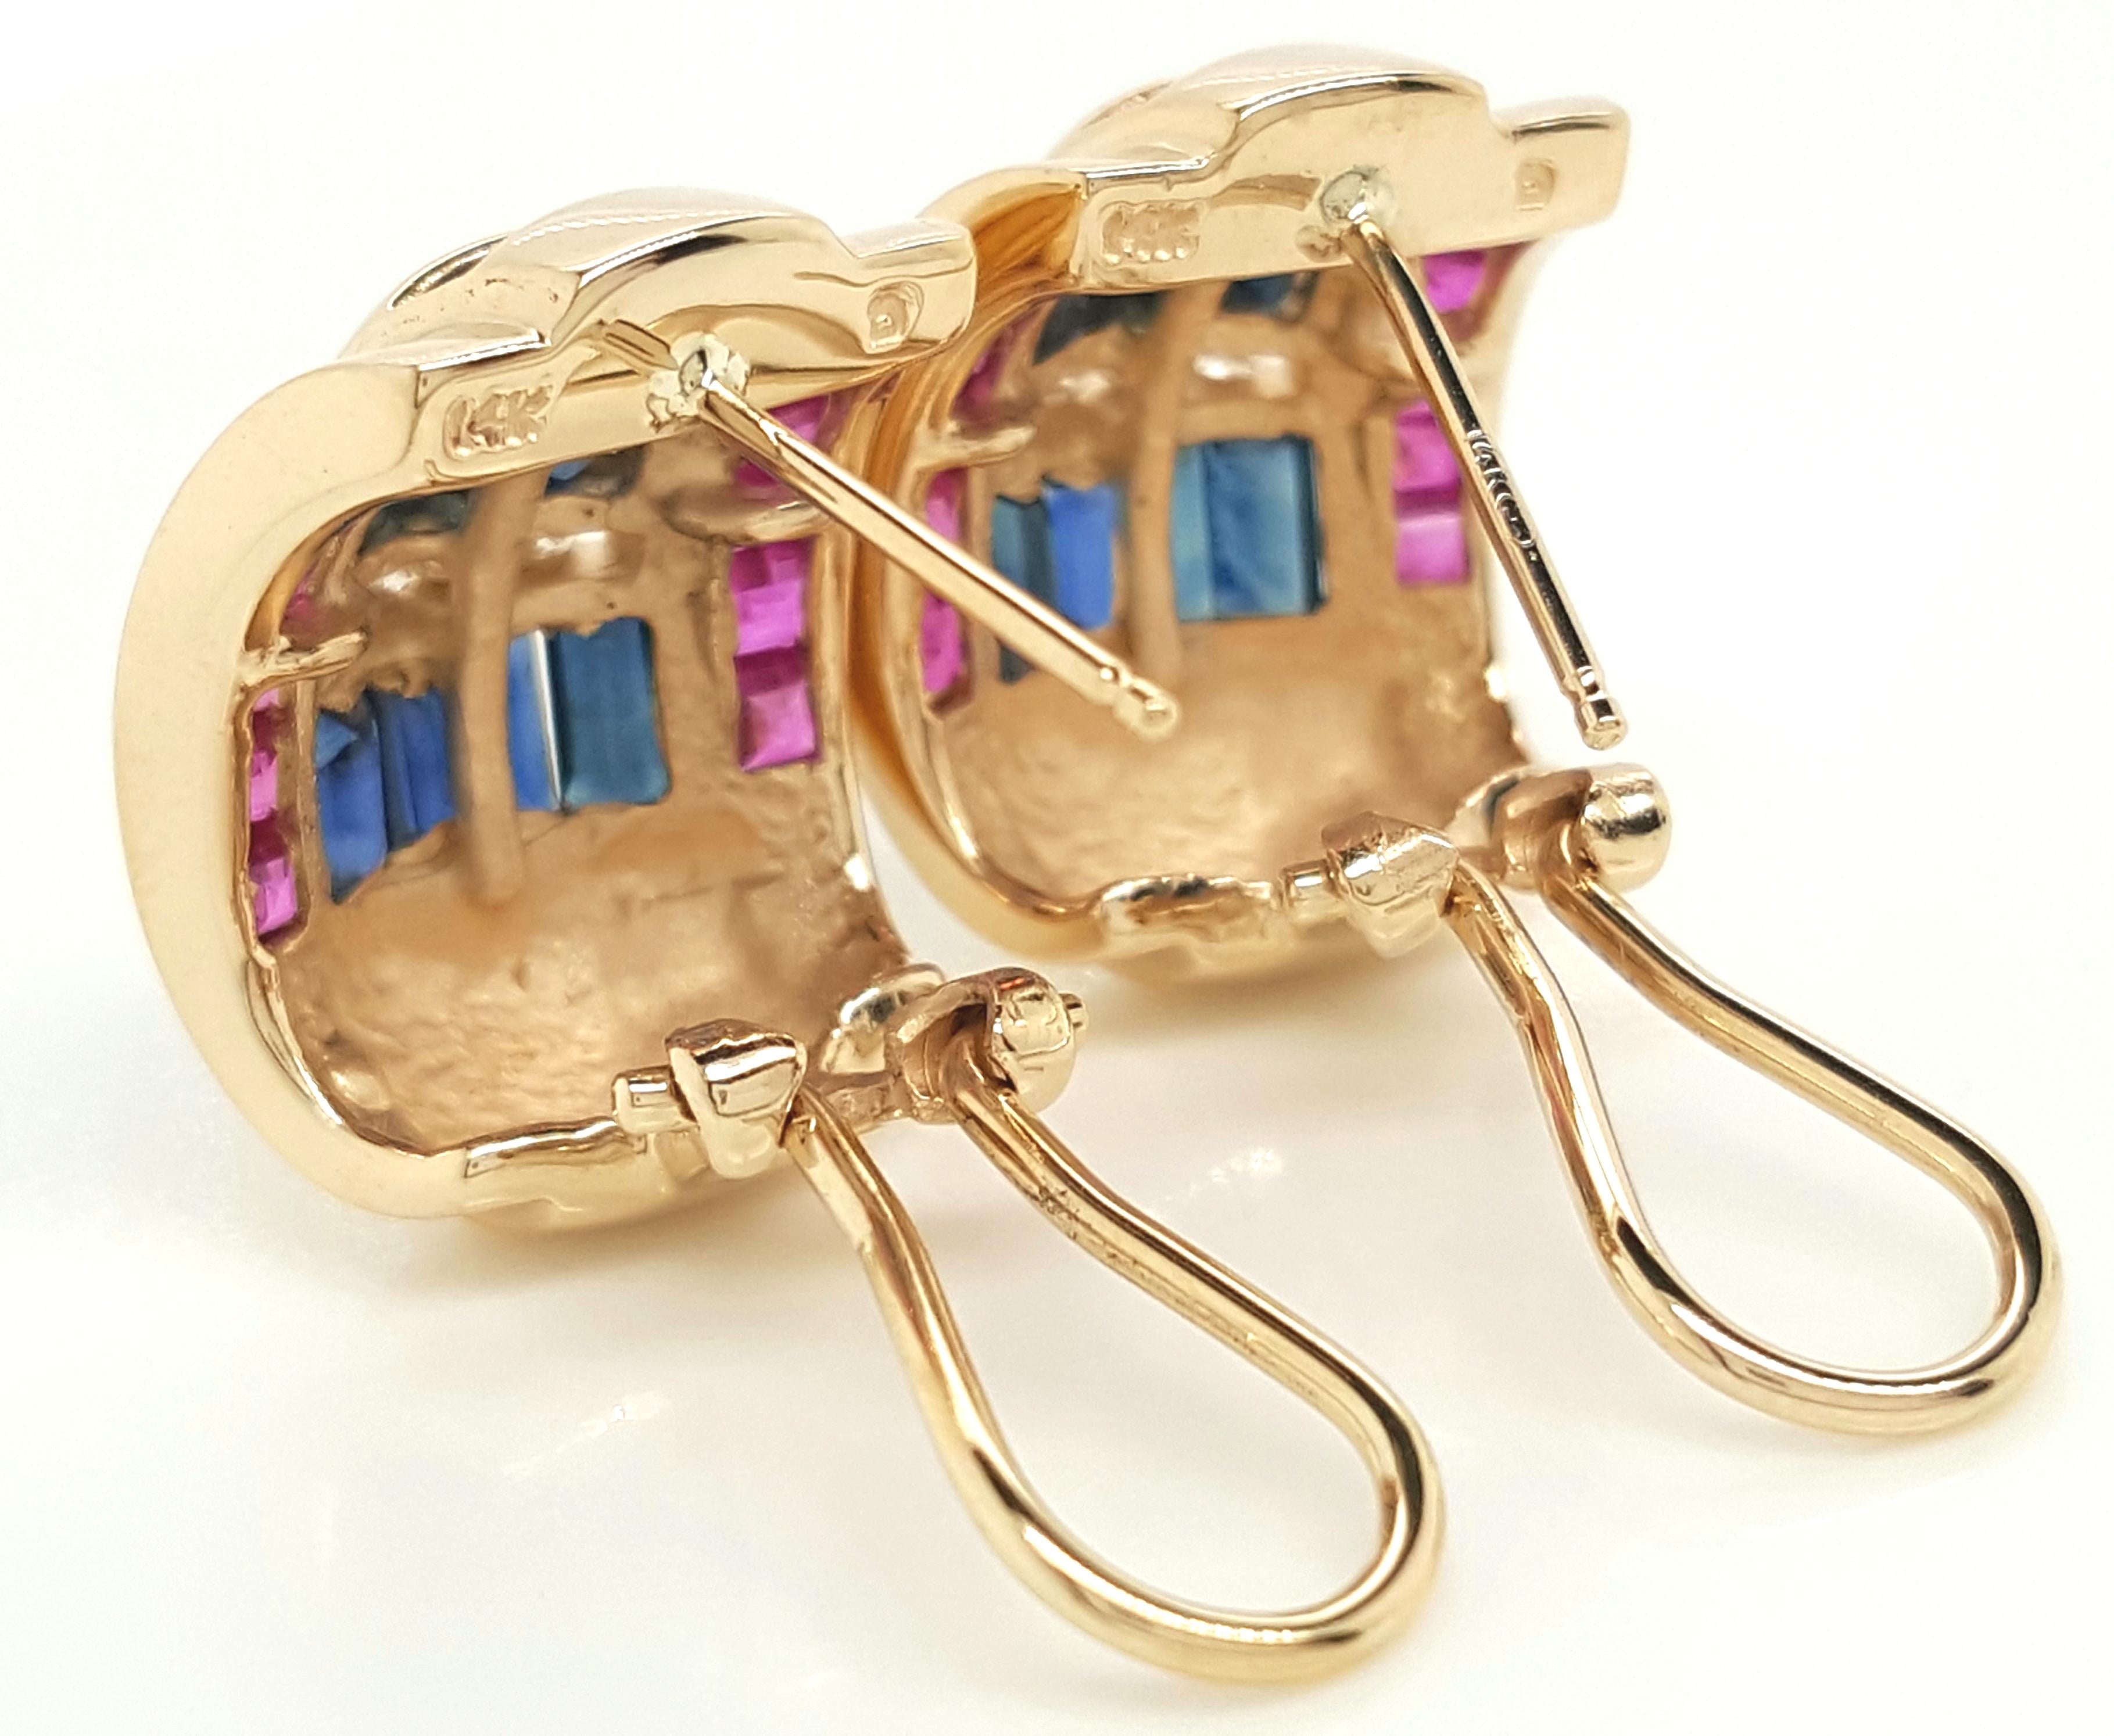 14K Weißgold Vintage Style Diamant, Saphir und Rubin Ohrringe. Diese Vintage-inspirierten Ohrringe verfügen über 14 Diamanten mit einem Gewicht von ca. 0,21 Karat, VS2 - SI1 Klarheit H-I Farbe und weiter akzentuiert durch 24 quadratische Schritt